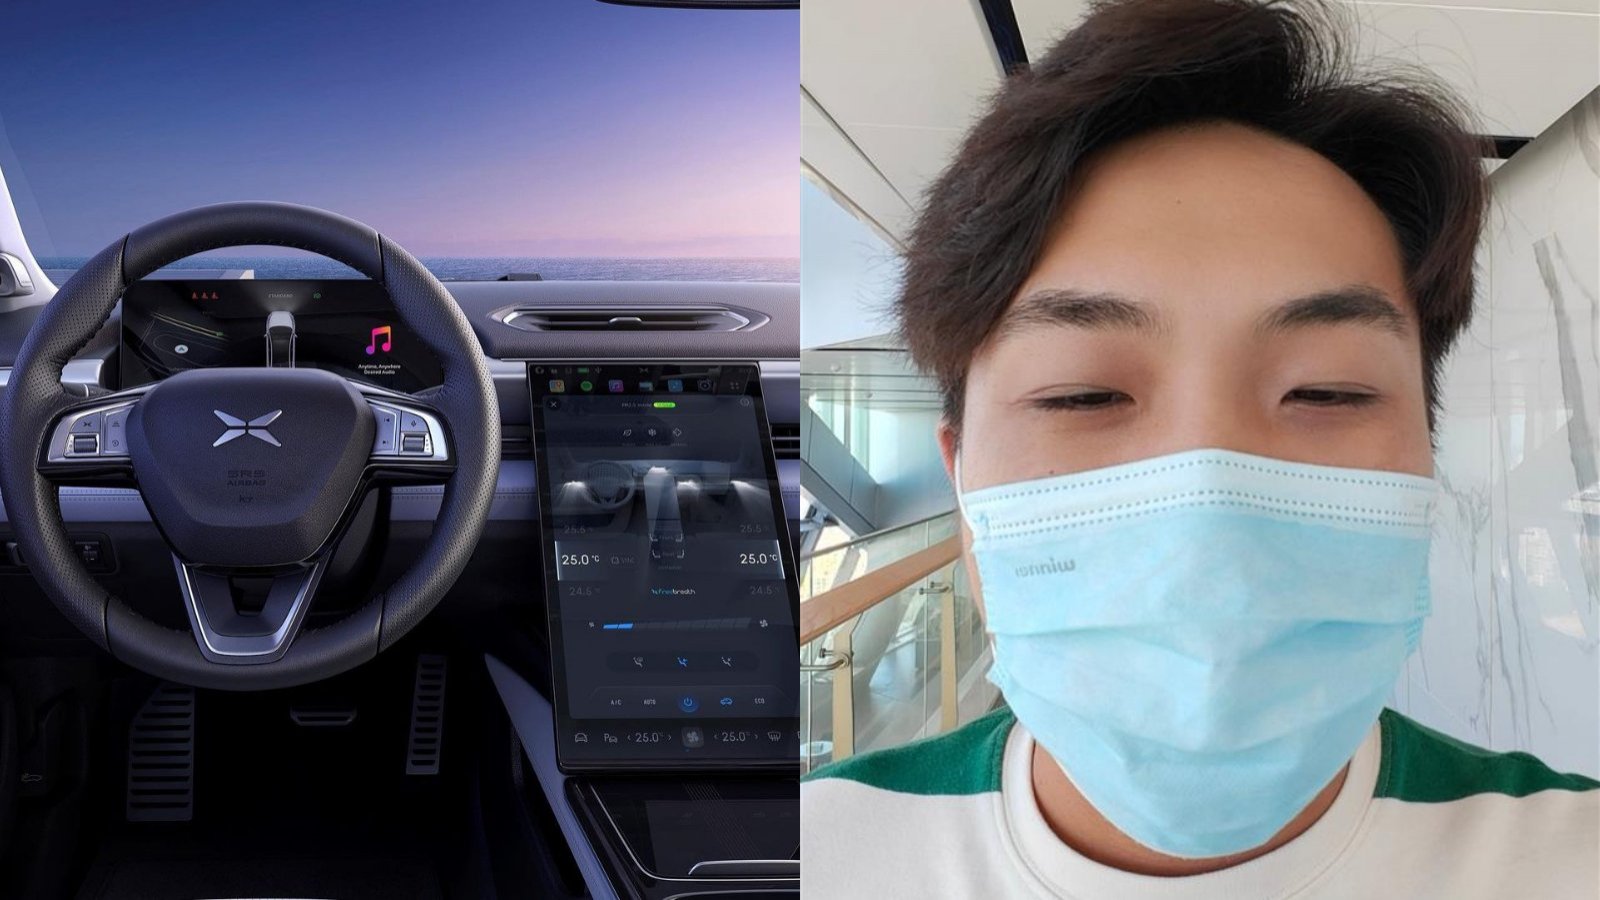 Influencer chino denuncia que su auto detecta su rostro como si estuviera durmiendo